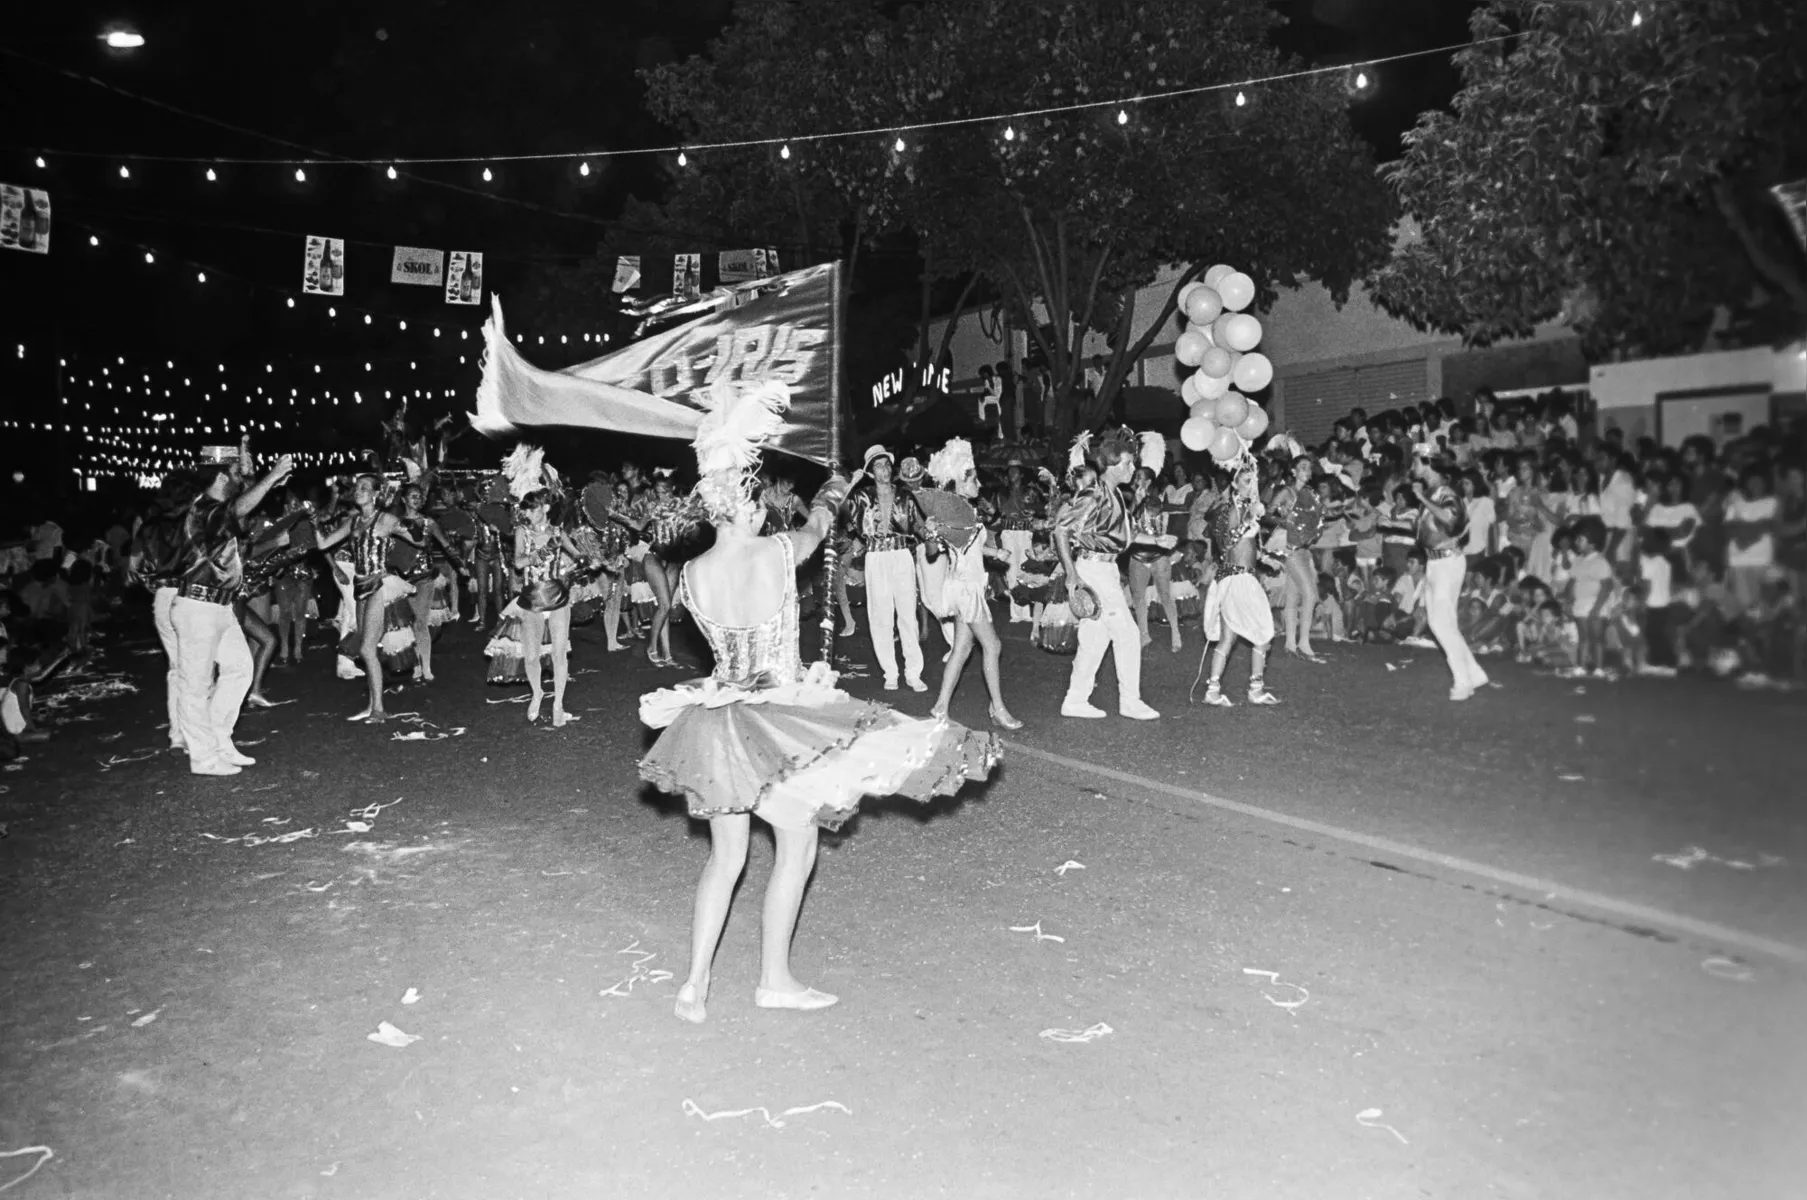 Carnaval de rua de Londrina, desfile de escolas de samba, sem data definida